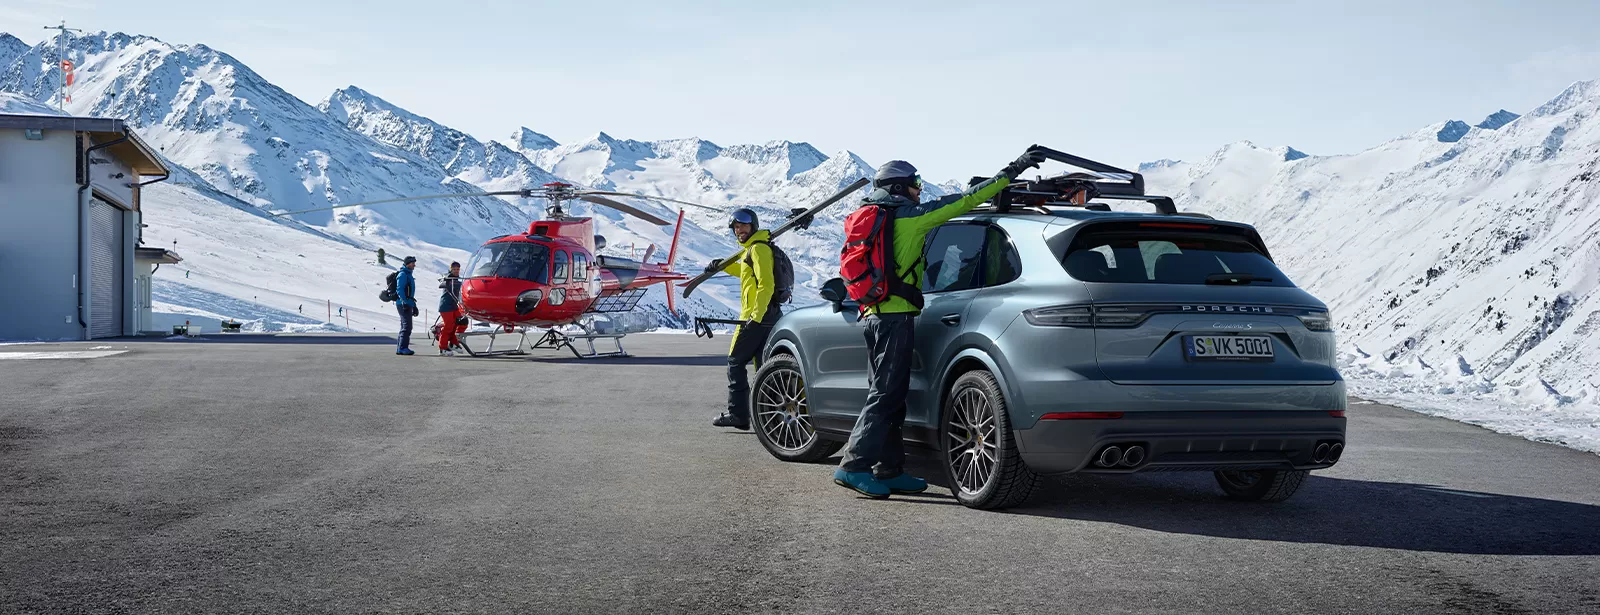 Лимитированная коллекция горных лыж Porsche Design Elan Amphibio.